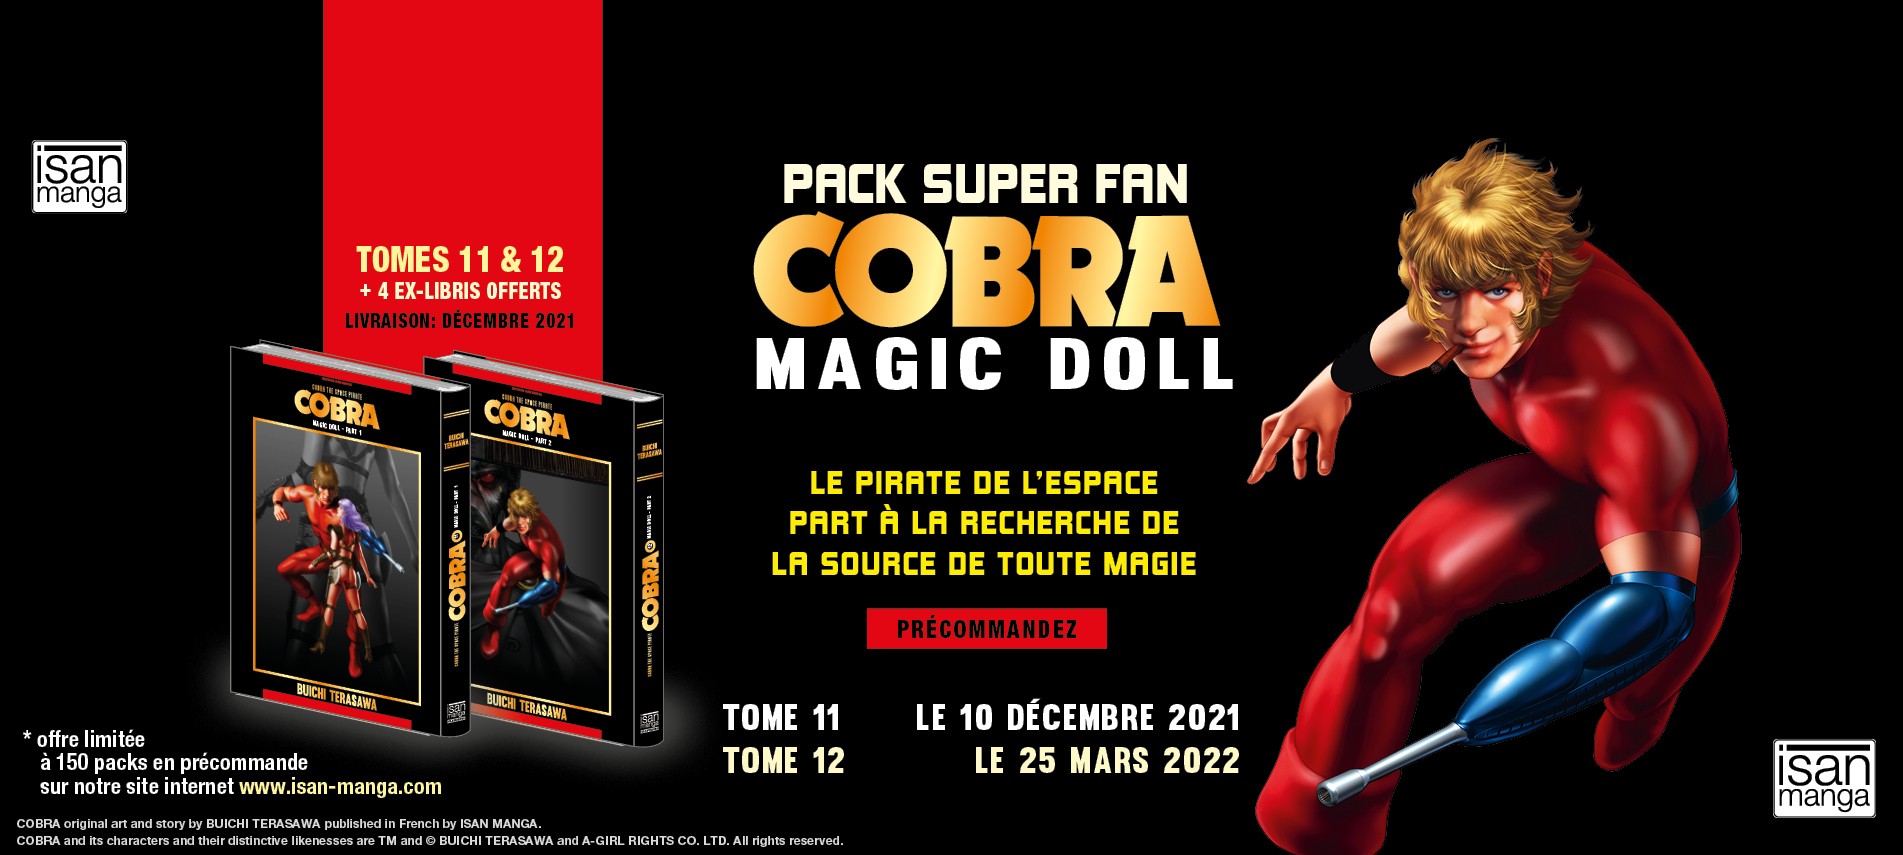 Cobra Magic Doll - Pack Super Fan comprenant les tomes 11 & 12 du manga de Buichi Terasawa